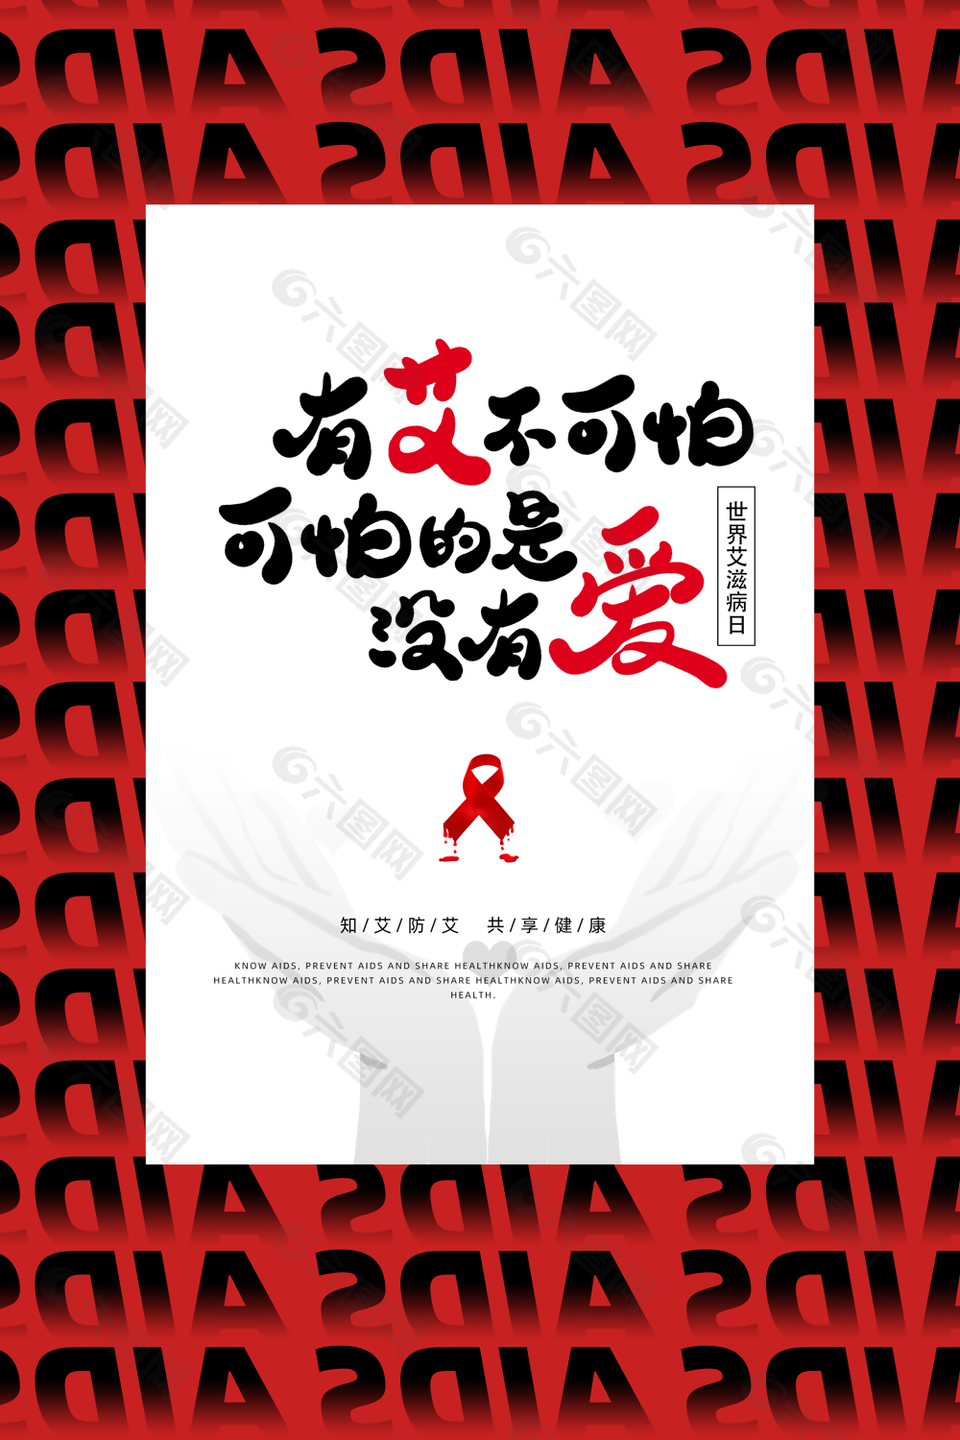 红色大气知艾防艾世界艾滋病日海报设计